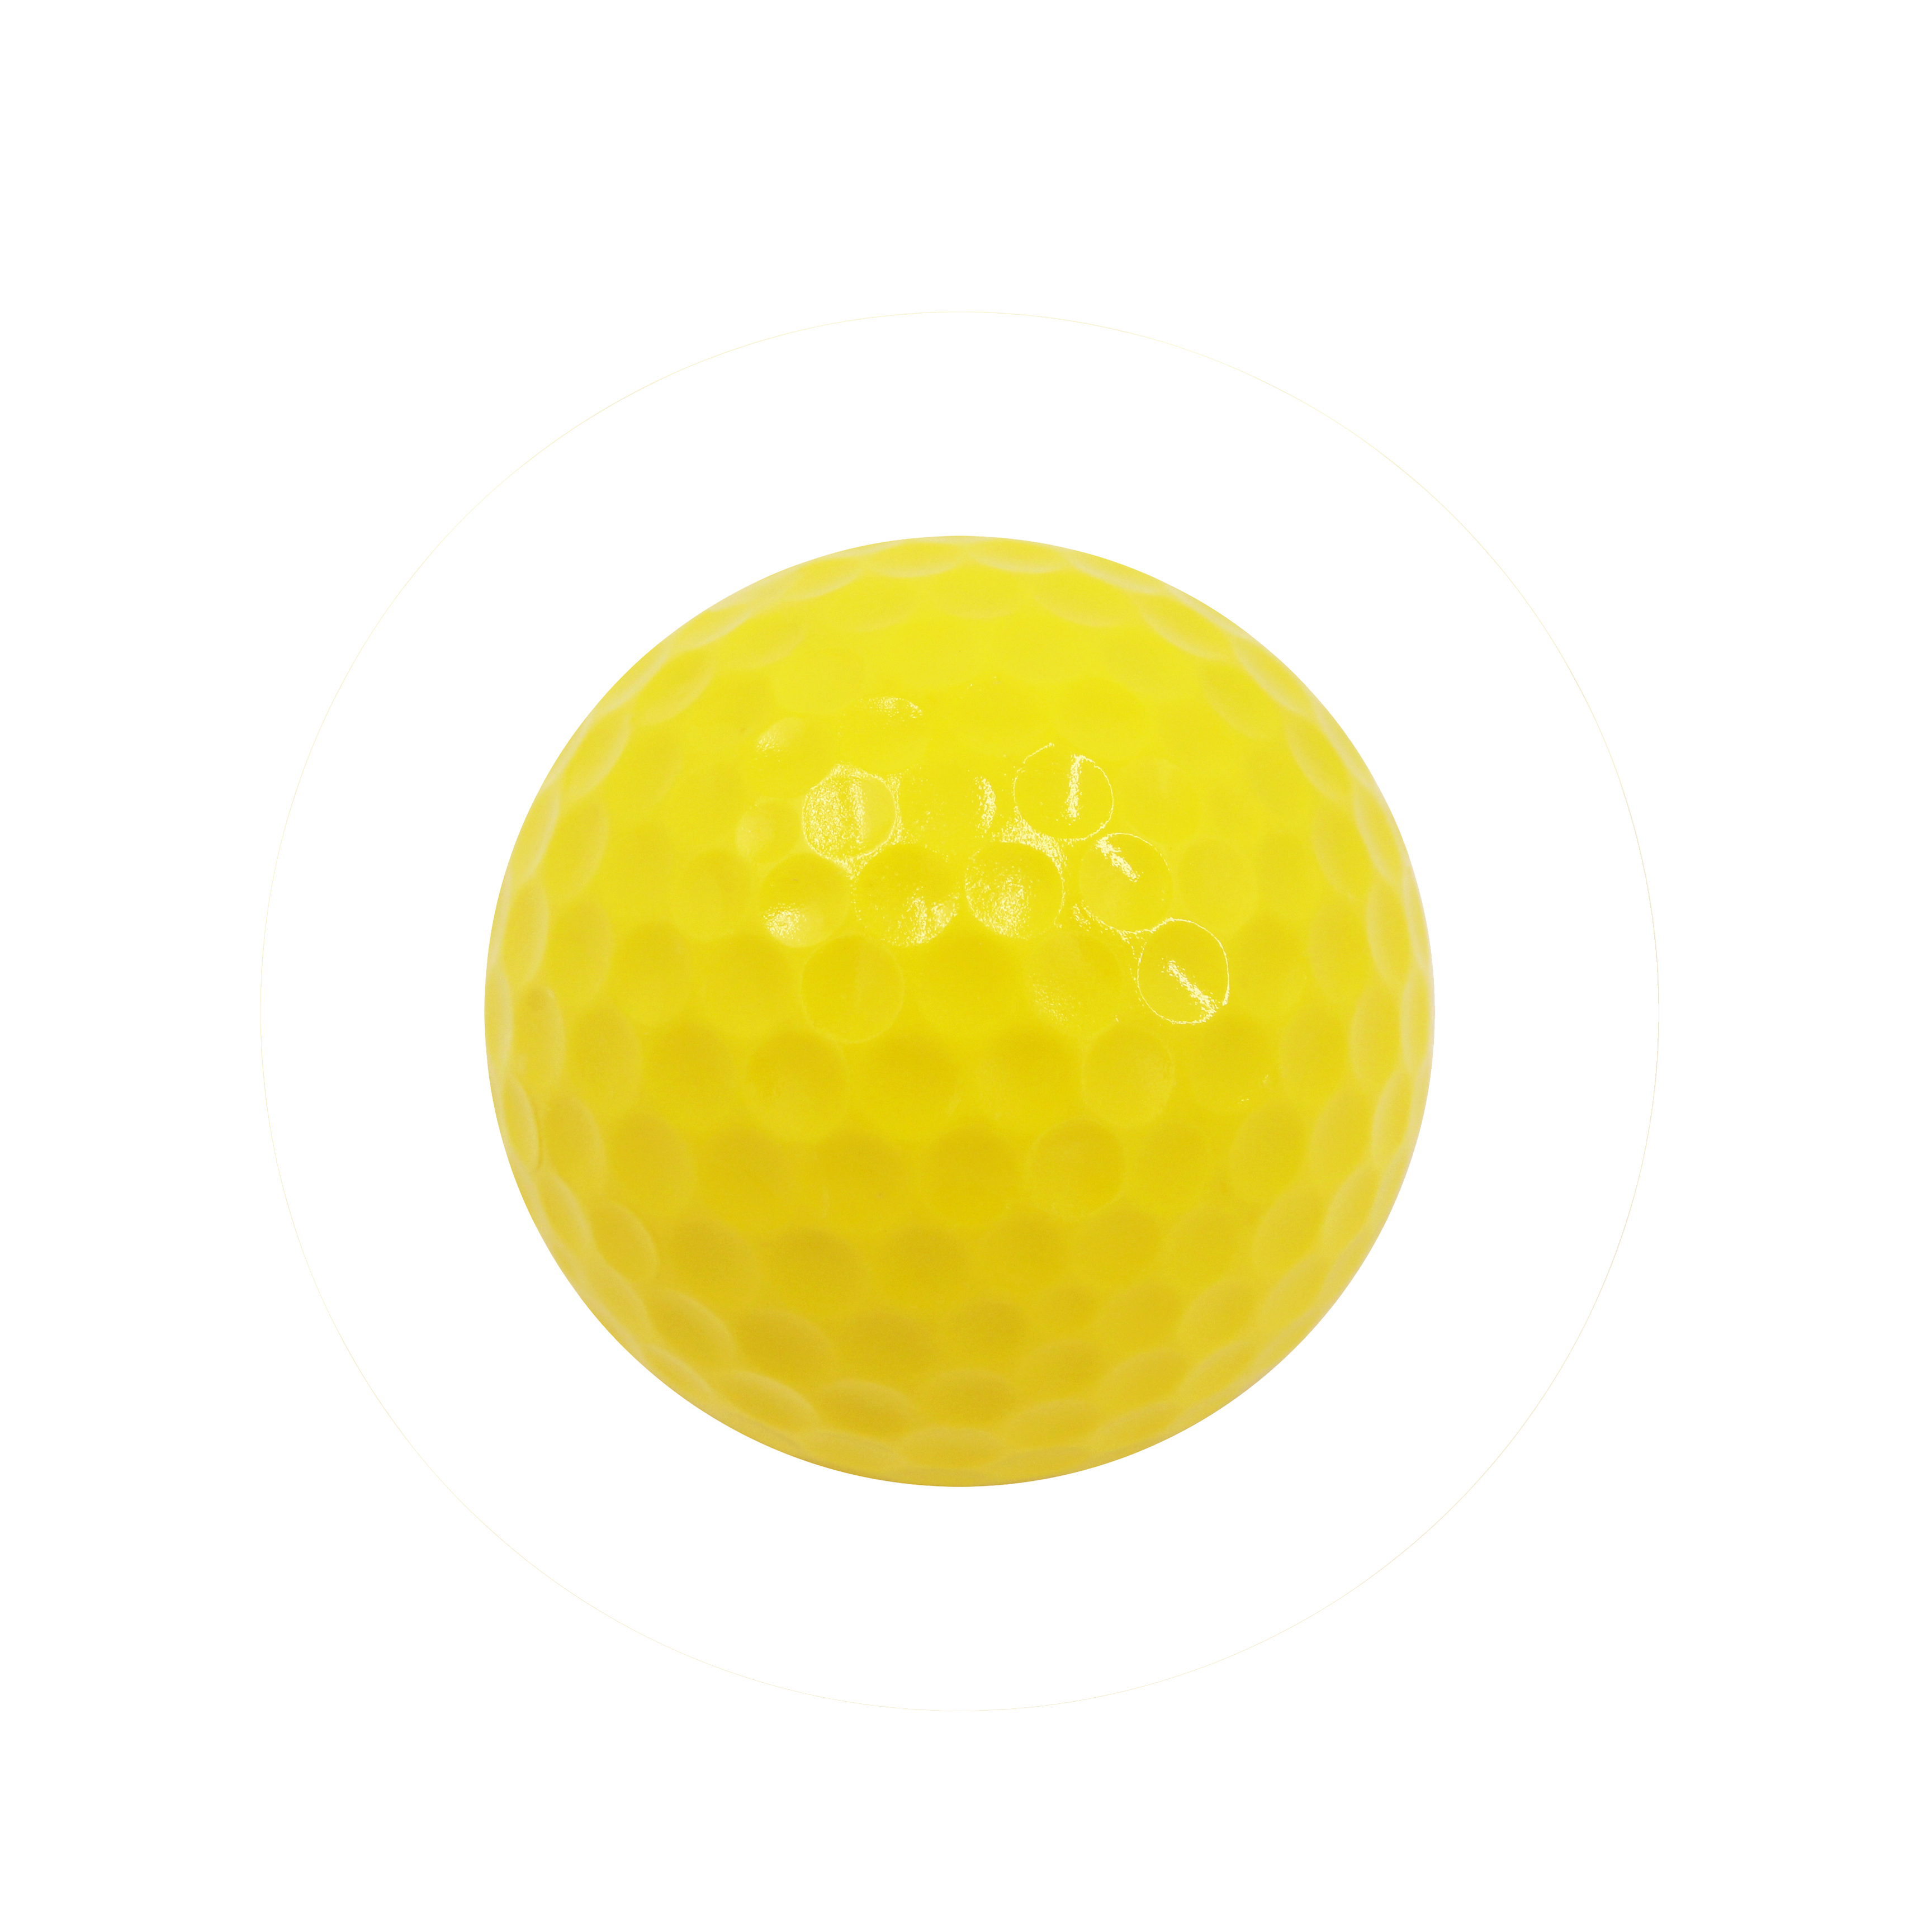 Pelota de campo de golf de 2 capas a precio de fábrica para practicar logotipo personalizado de color amarillo